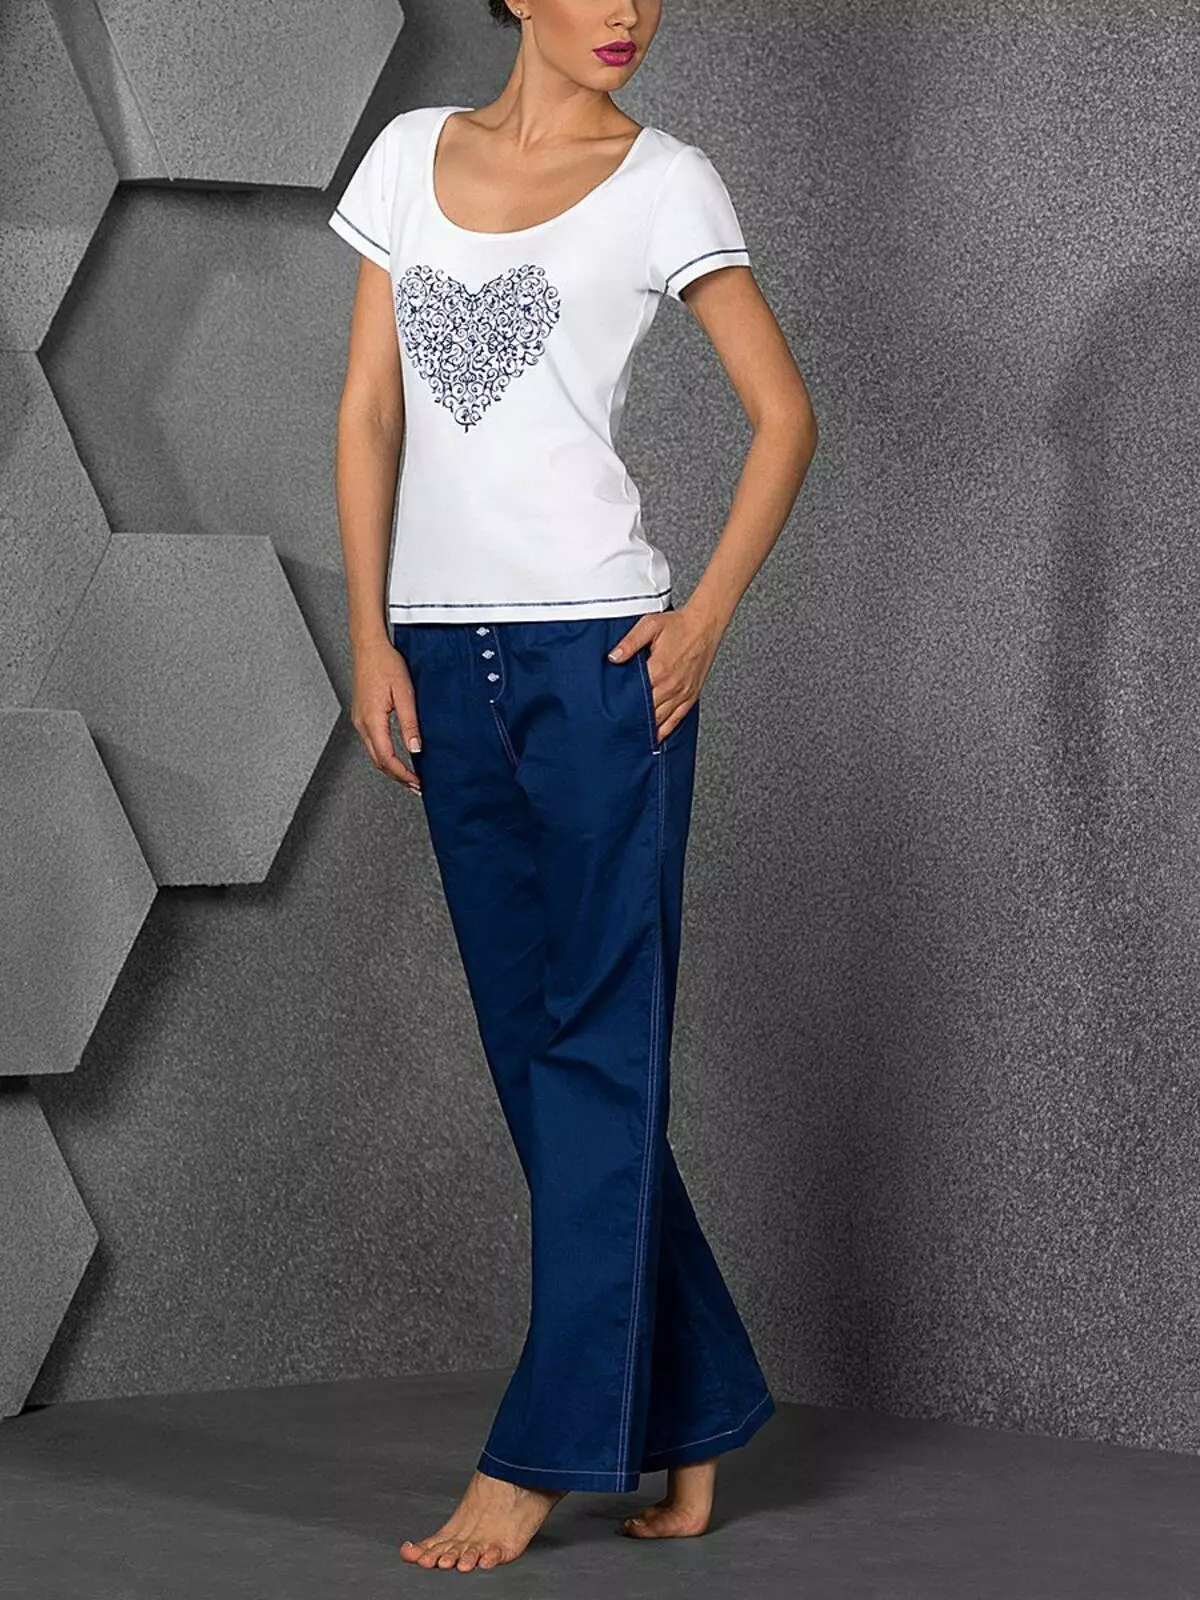 Spodnie mody 2021: Stylowe modele damskie, trendy mody 917_271